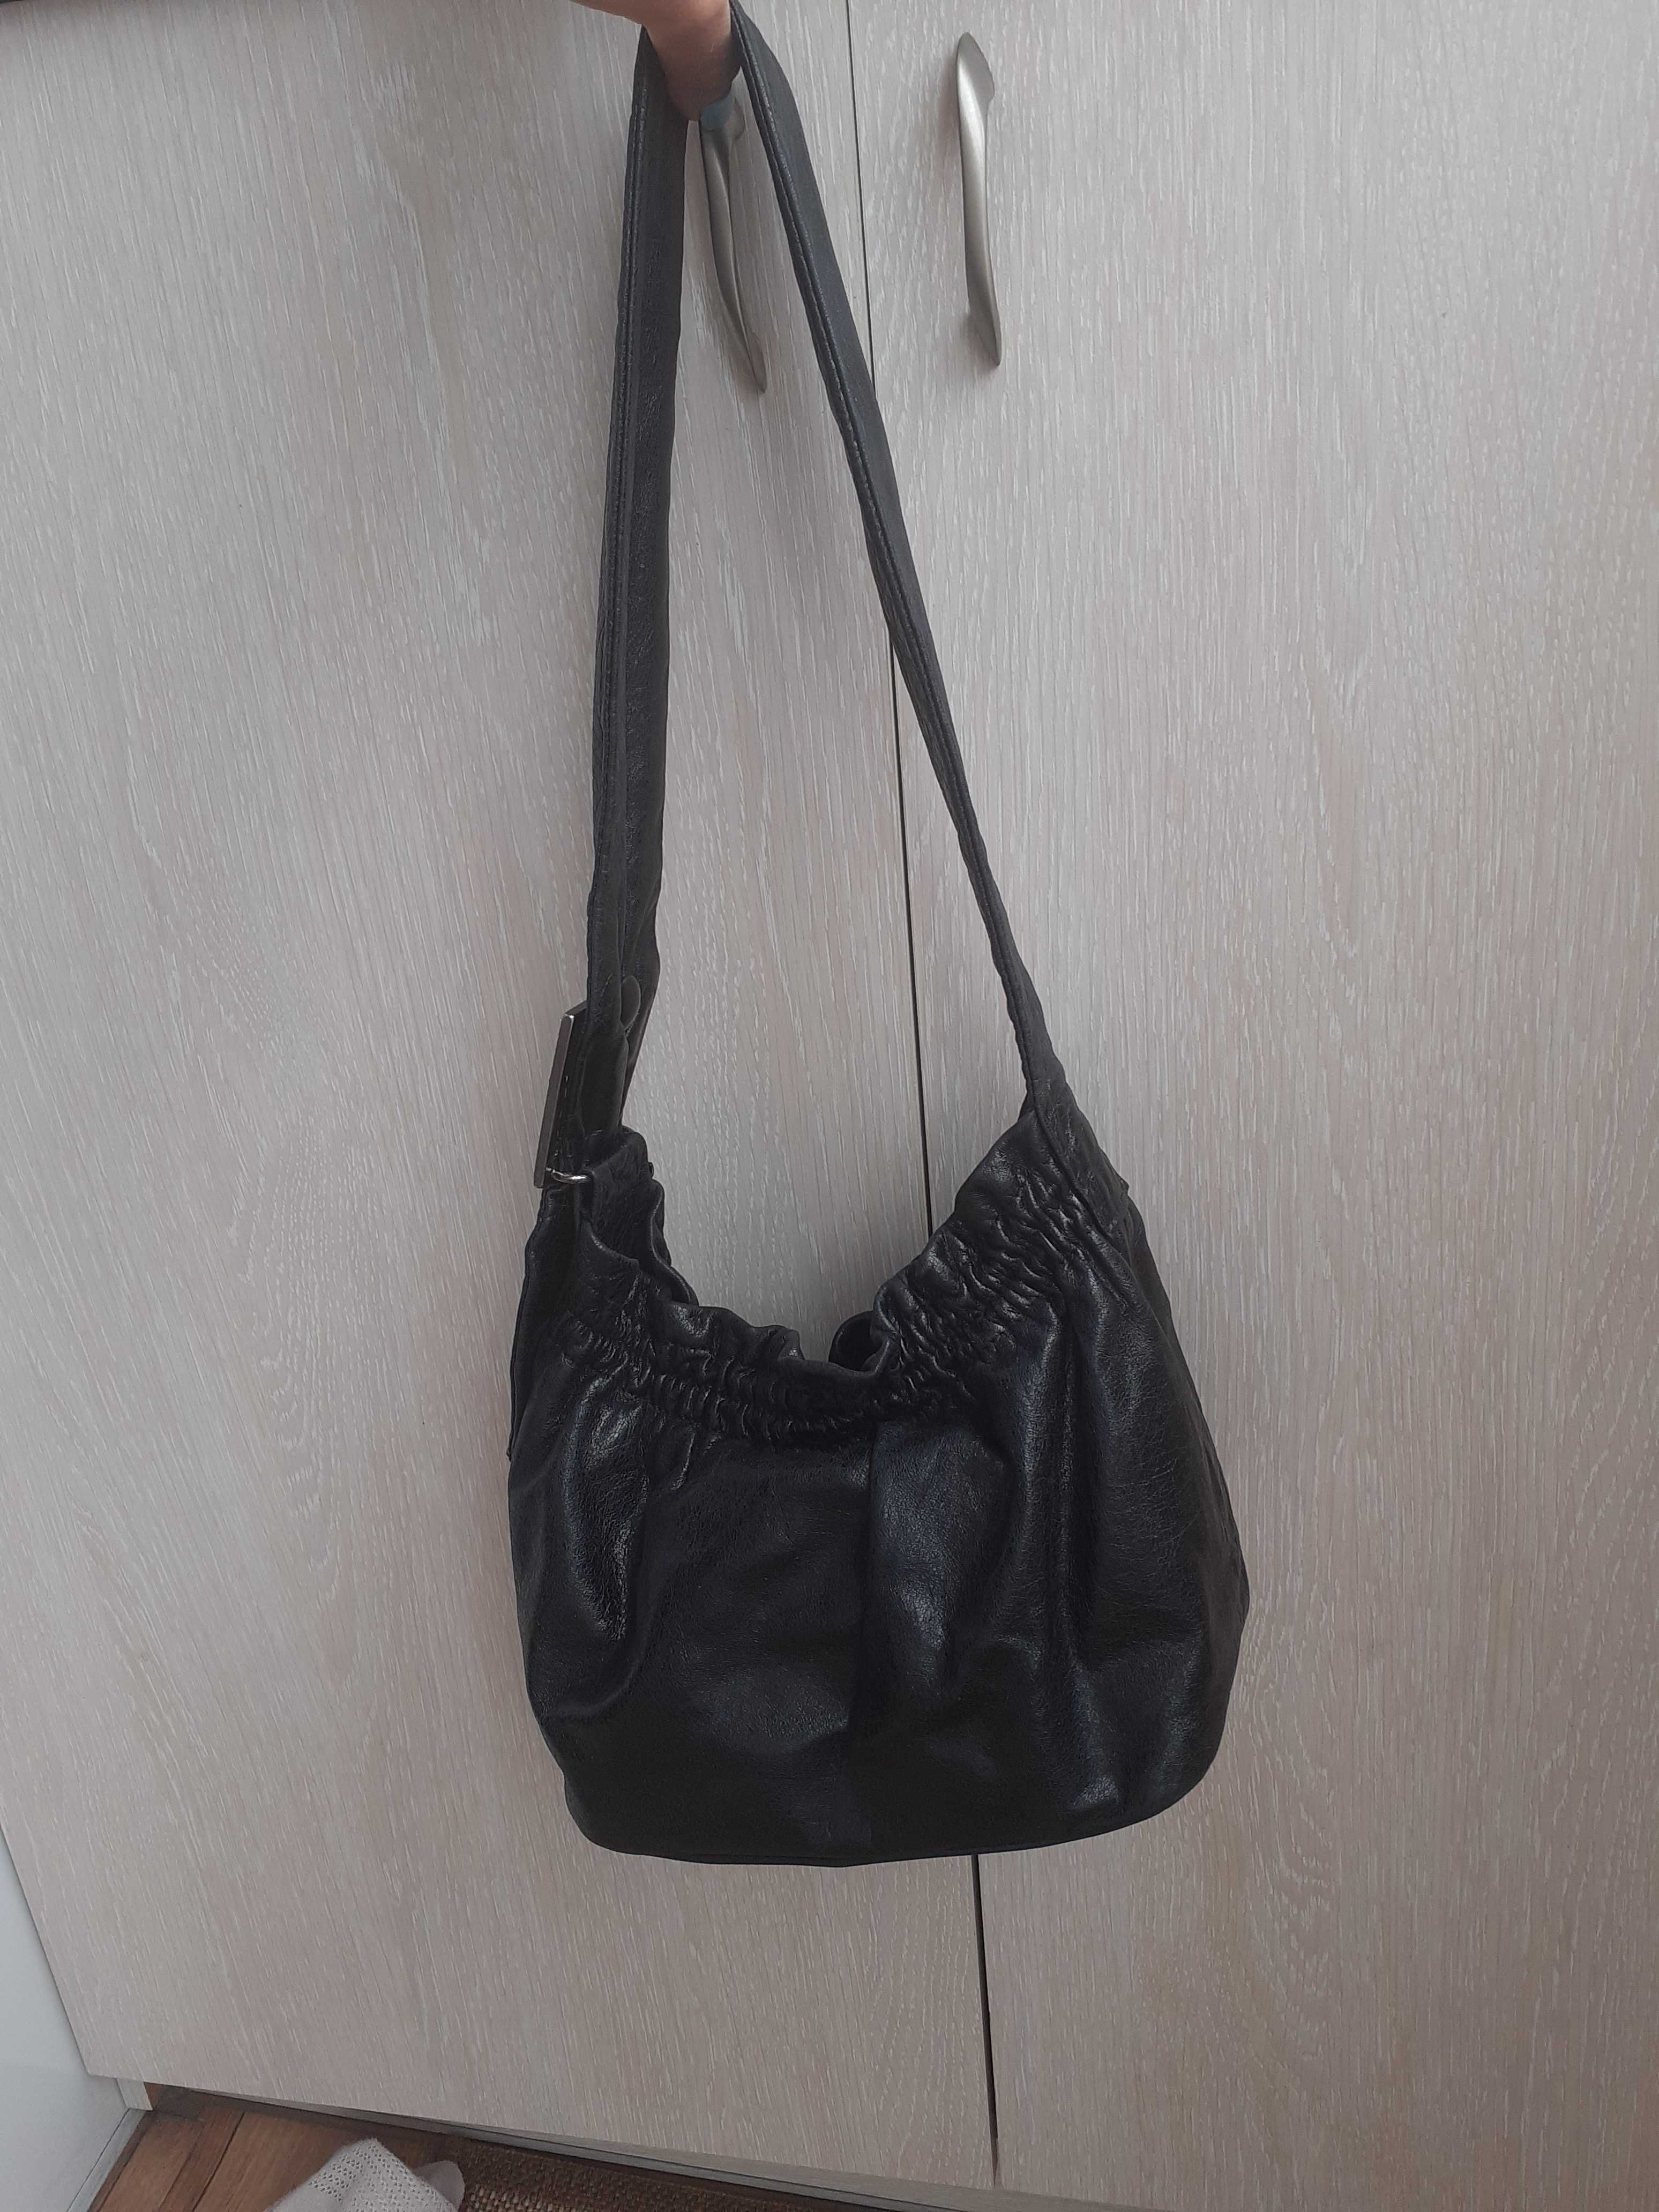 Кожаная черная сумка кракелюр кроссбоди кросбоди сумочка